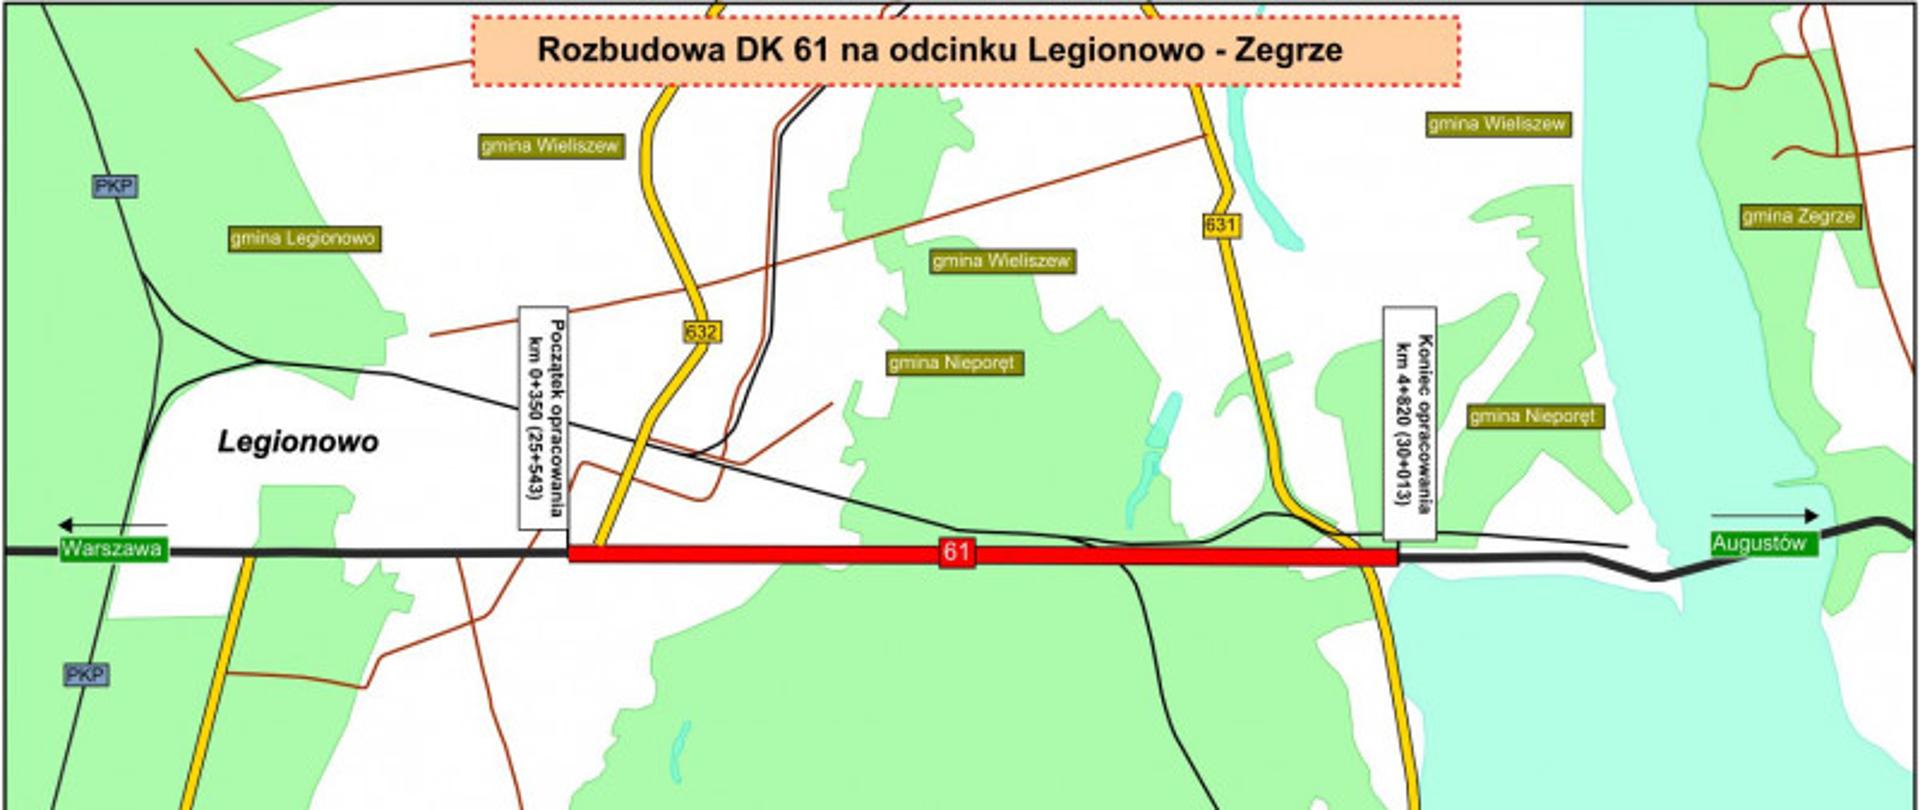 Rozbudowa DK61 na odc. Legionowo-Zegrze - przebieg drogi